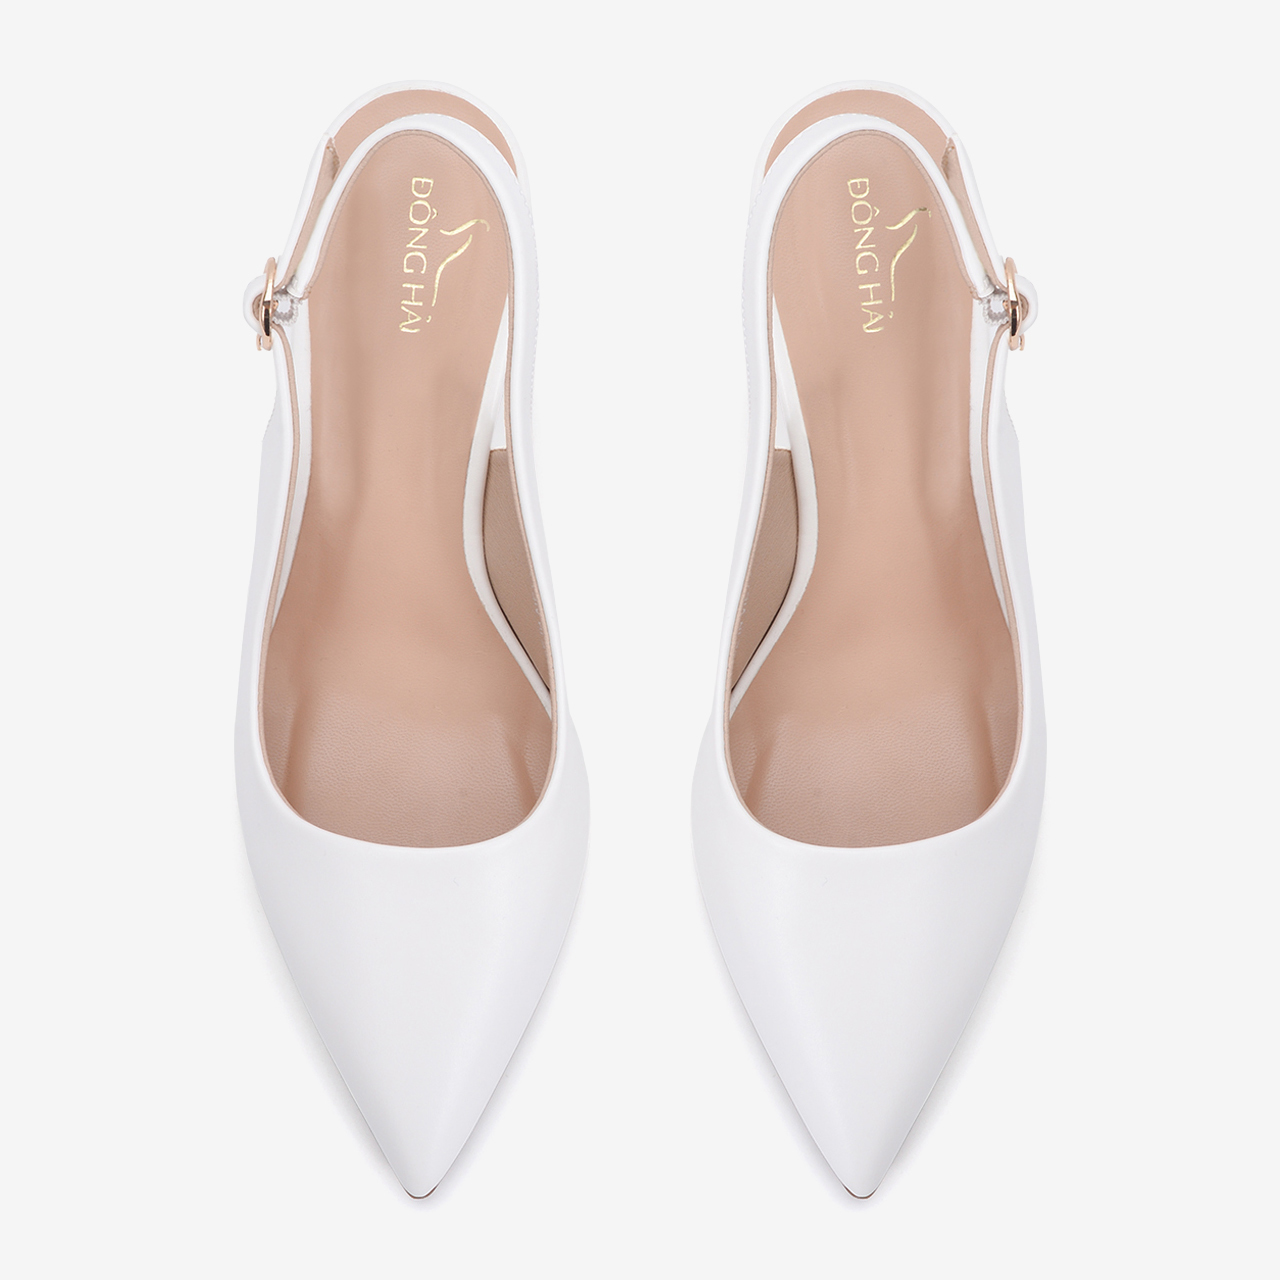 Giày cao gót nữ Đông Hải thiết kế Slingback mũi nhọn sành điệu đính gót kim cương cao 7cm - G81I8